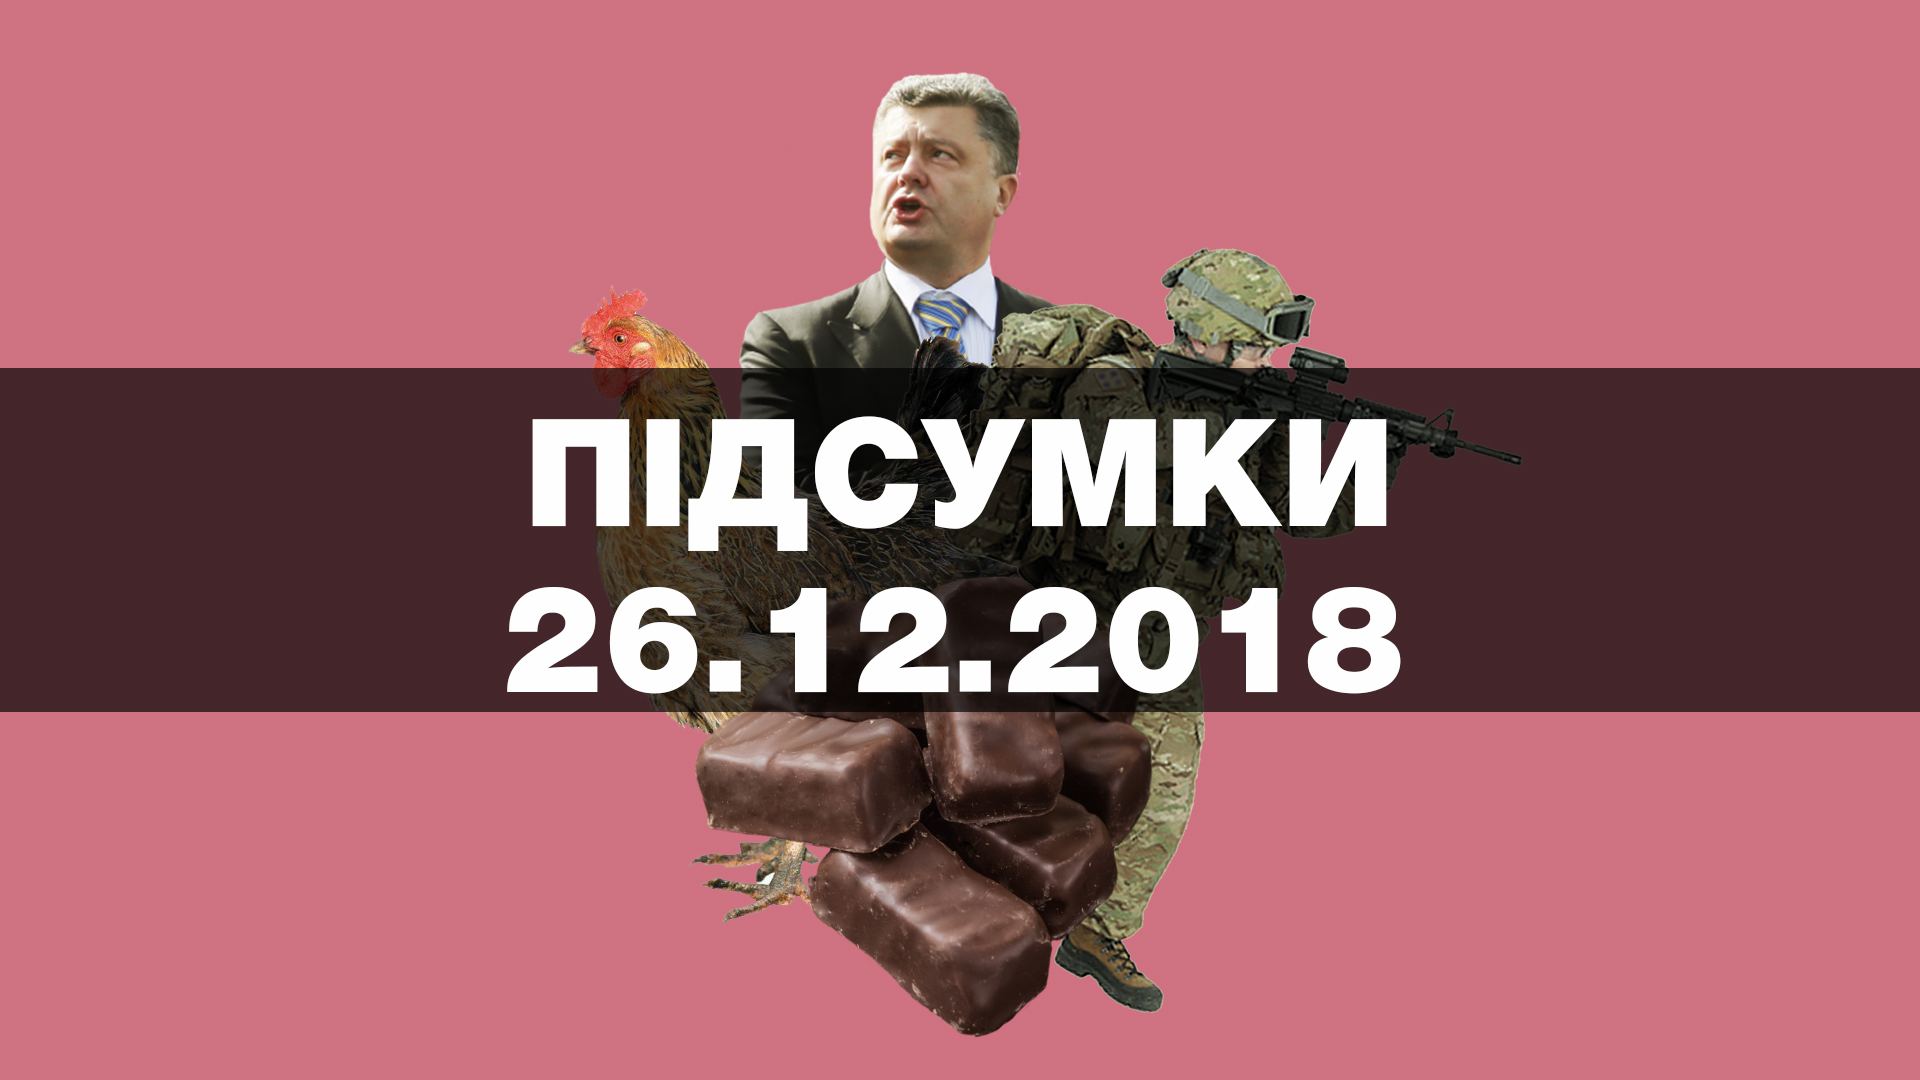 В Україні закінчився воєнний стан, Порошенко очолив антирейтинг кандидатів, гривня зміцніла до долара — найважливіші новини середи за 60 секунд